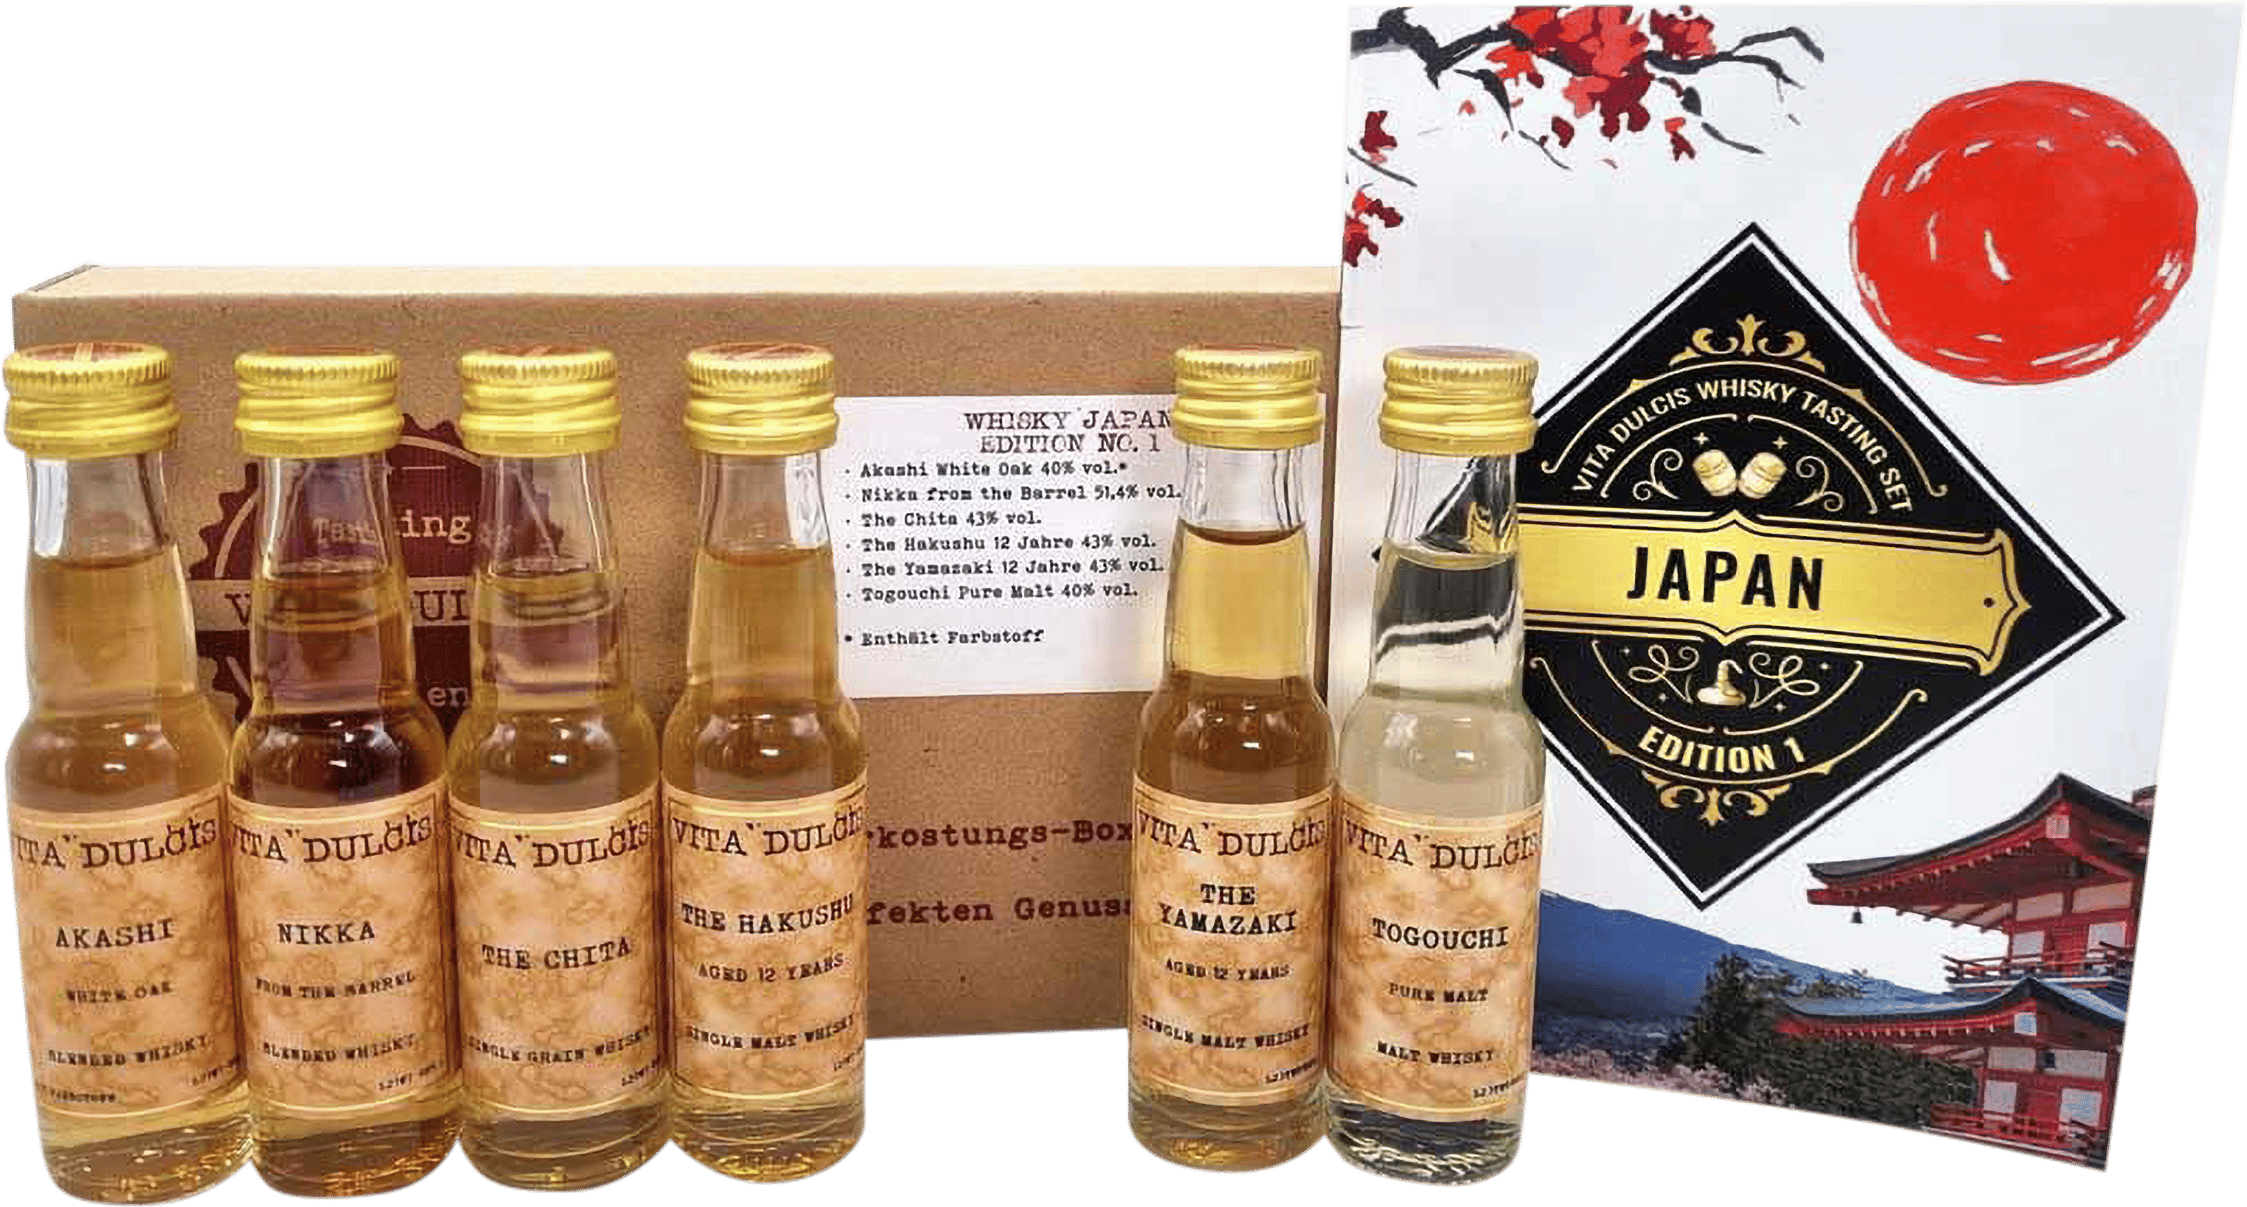 Whisky Tasting Box Japan kaufen | Honest & Rare